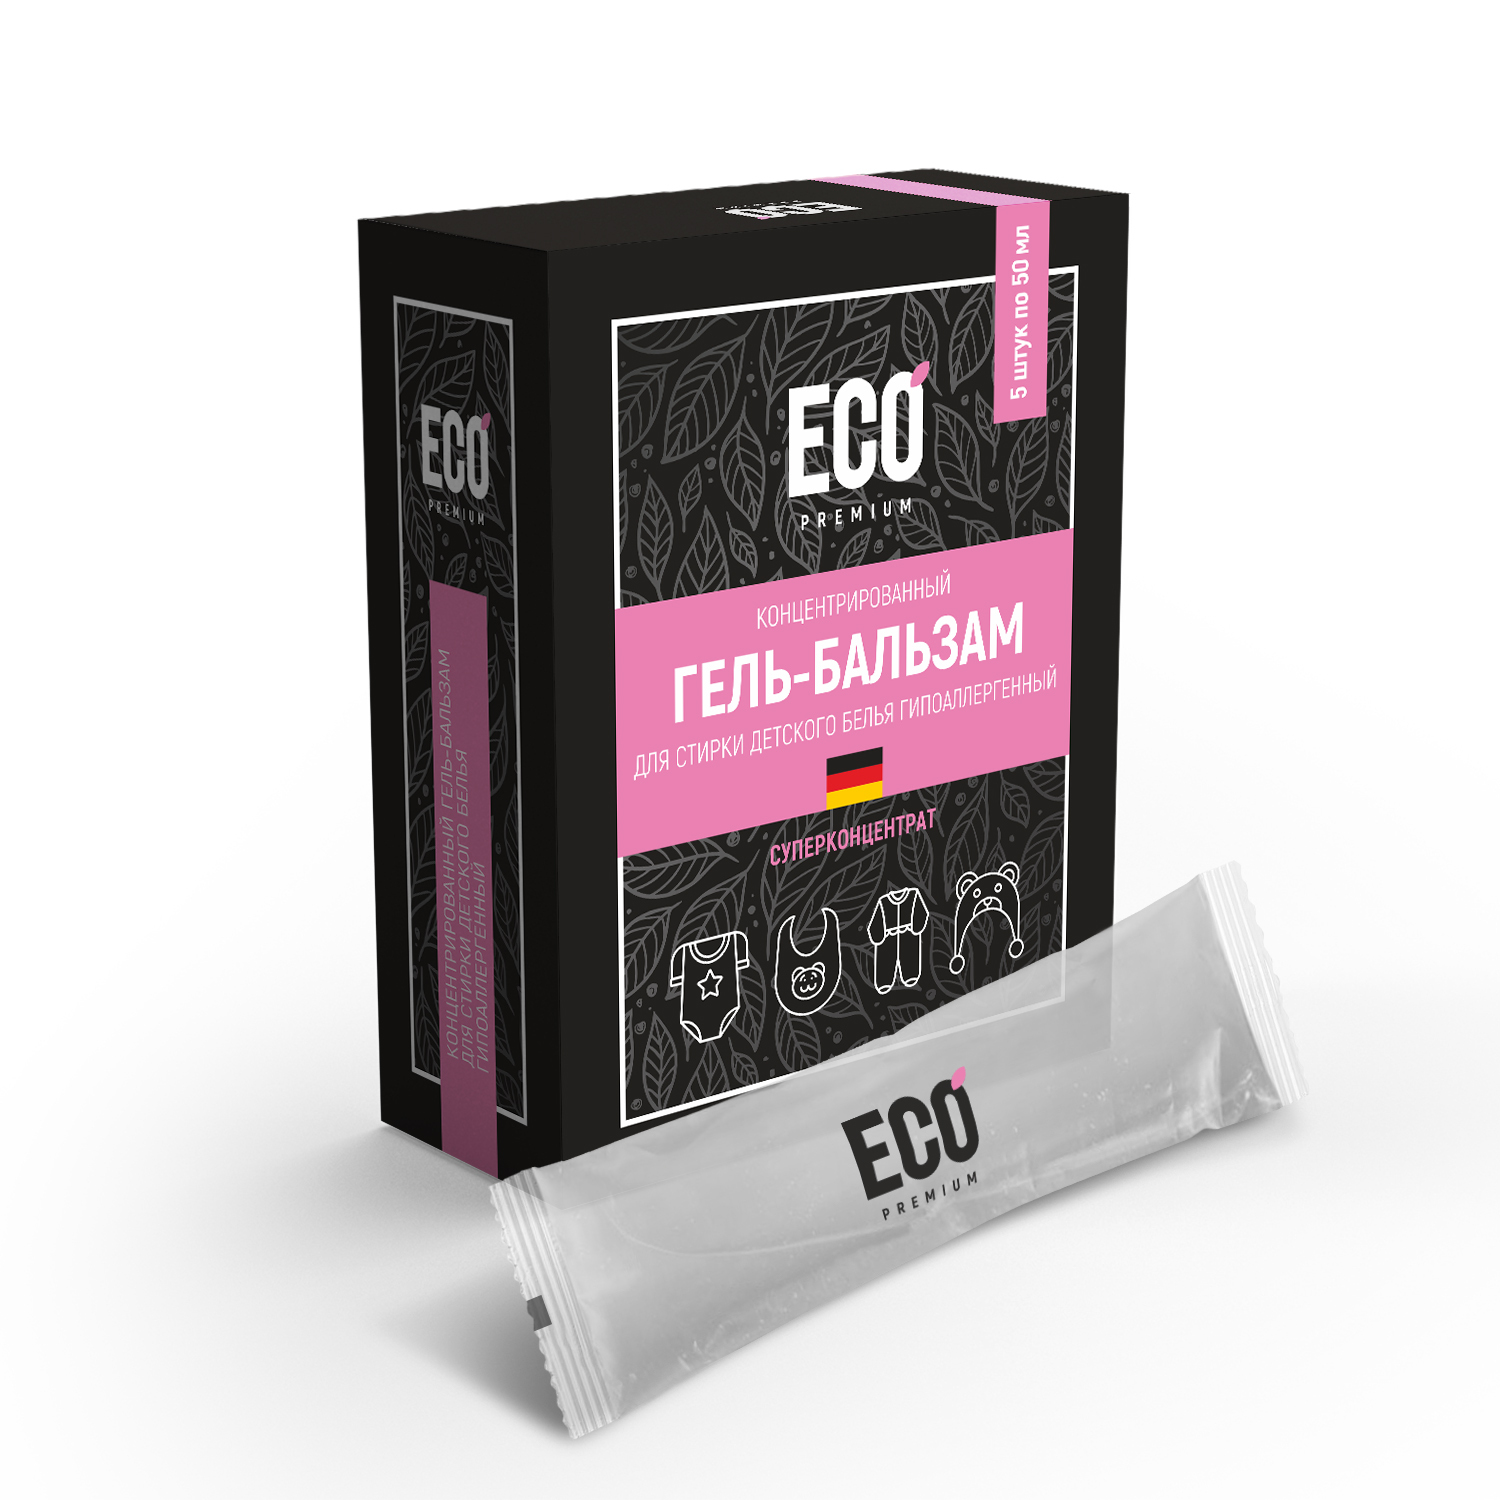 Гель-бальзам для стирки детского белья ECO-Premium гипоаллергенный 5 стиков по 50мл.